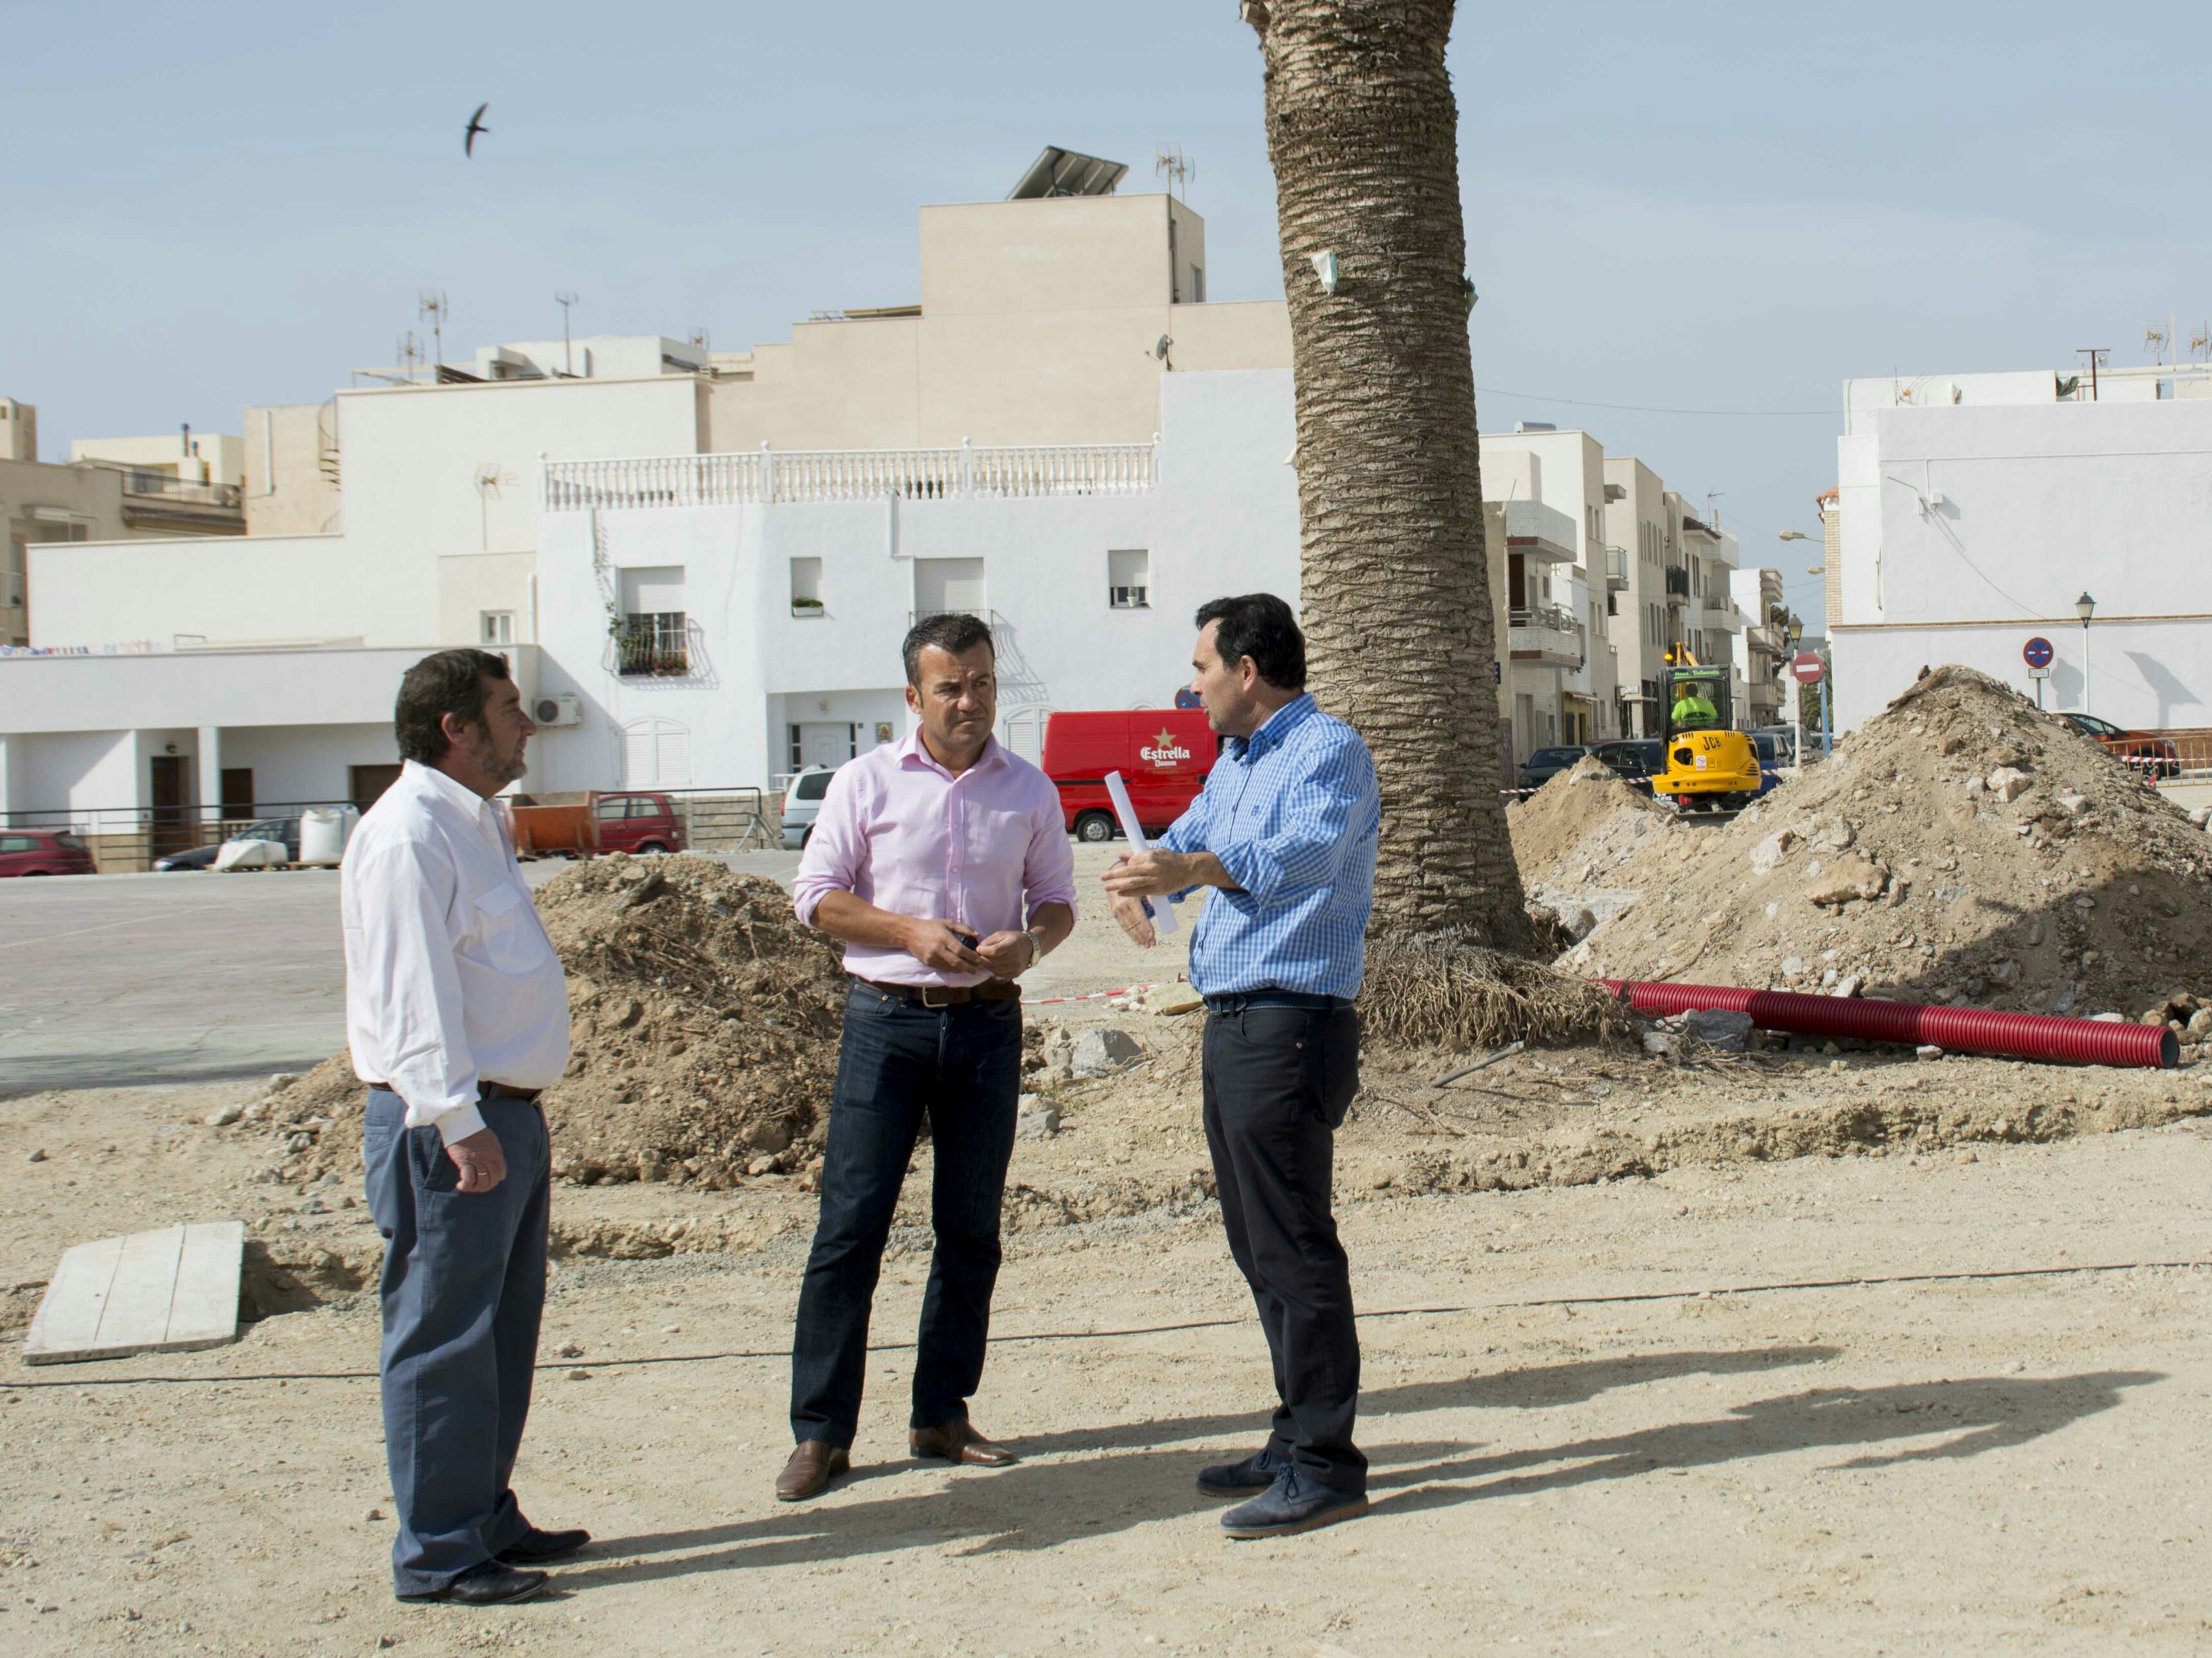 Noticia de Almería 24h: Inician los trabajos para convertir el solar del viejo Simón Fuentes en un gran espacio polivalente